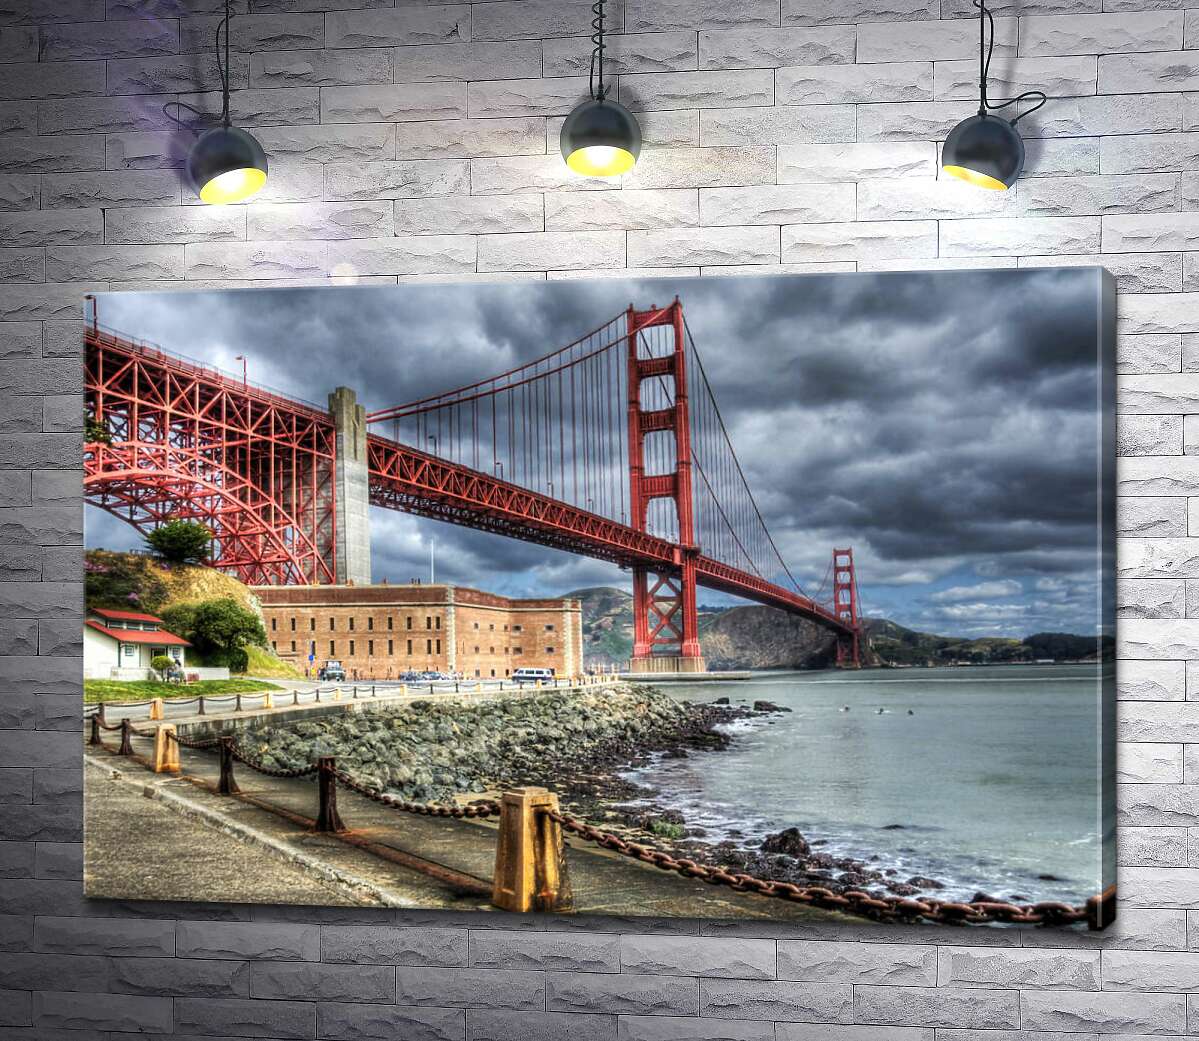 картина Багряний міст "Золоті ворота" (Golden Gate Bridge) впирається в грозові хмари